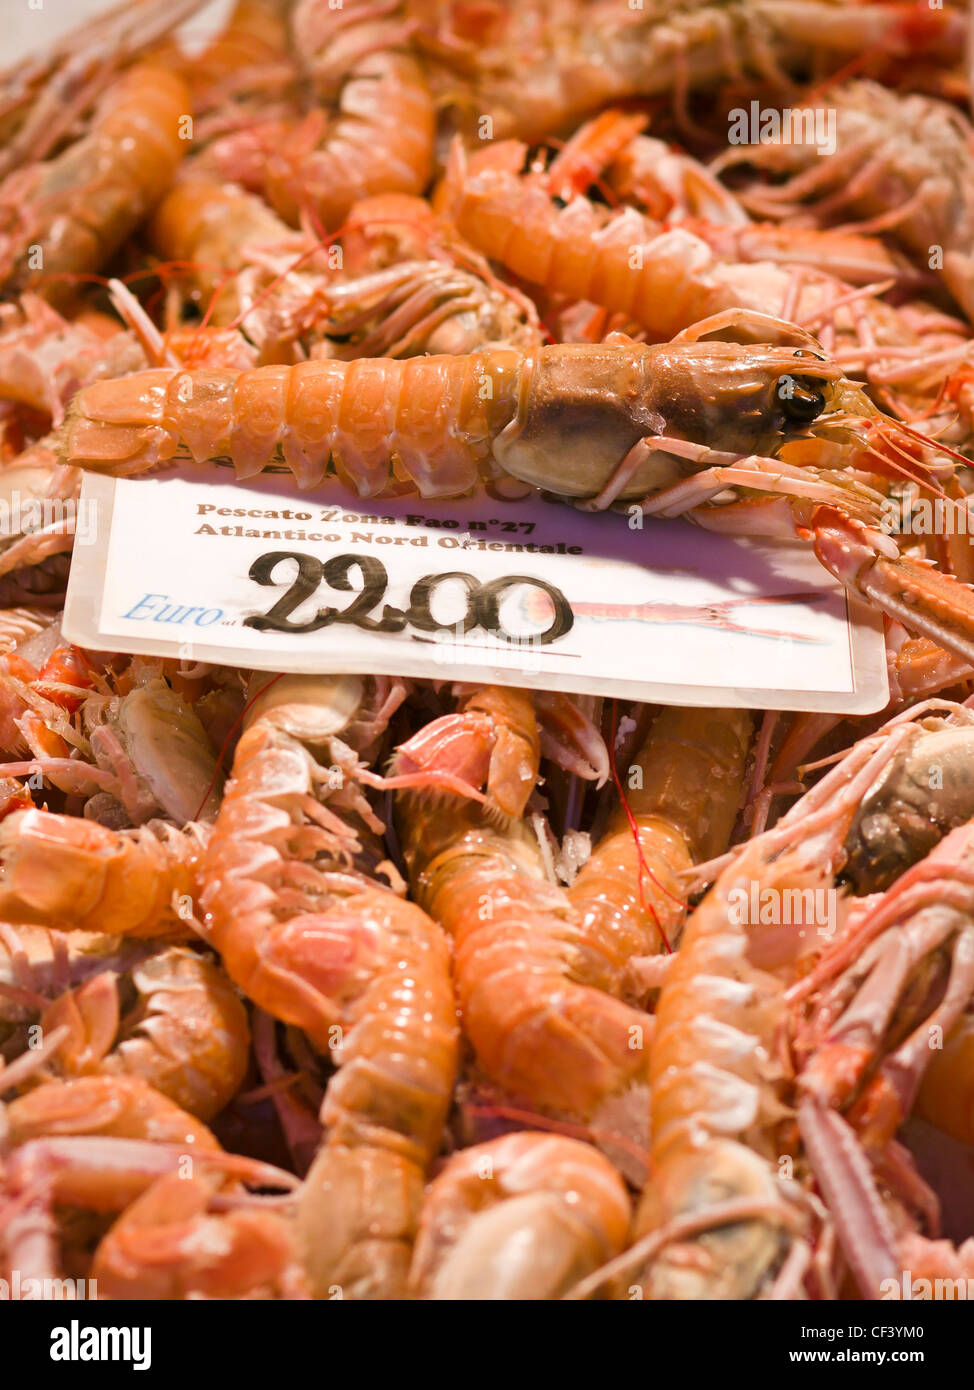 Crayfish for sale at the Rialto fish market - Venice, Venezia, Italy, Europe Stock Photo